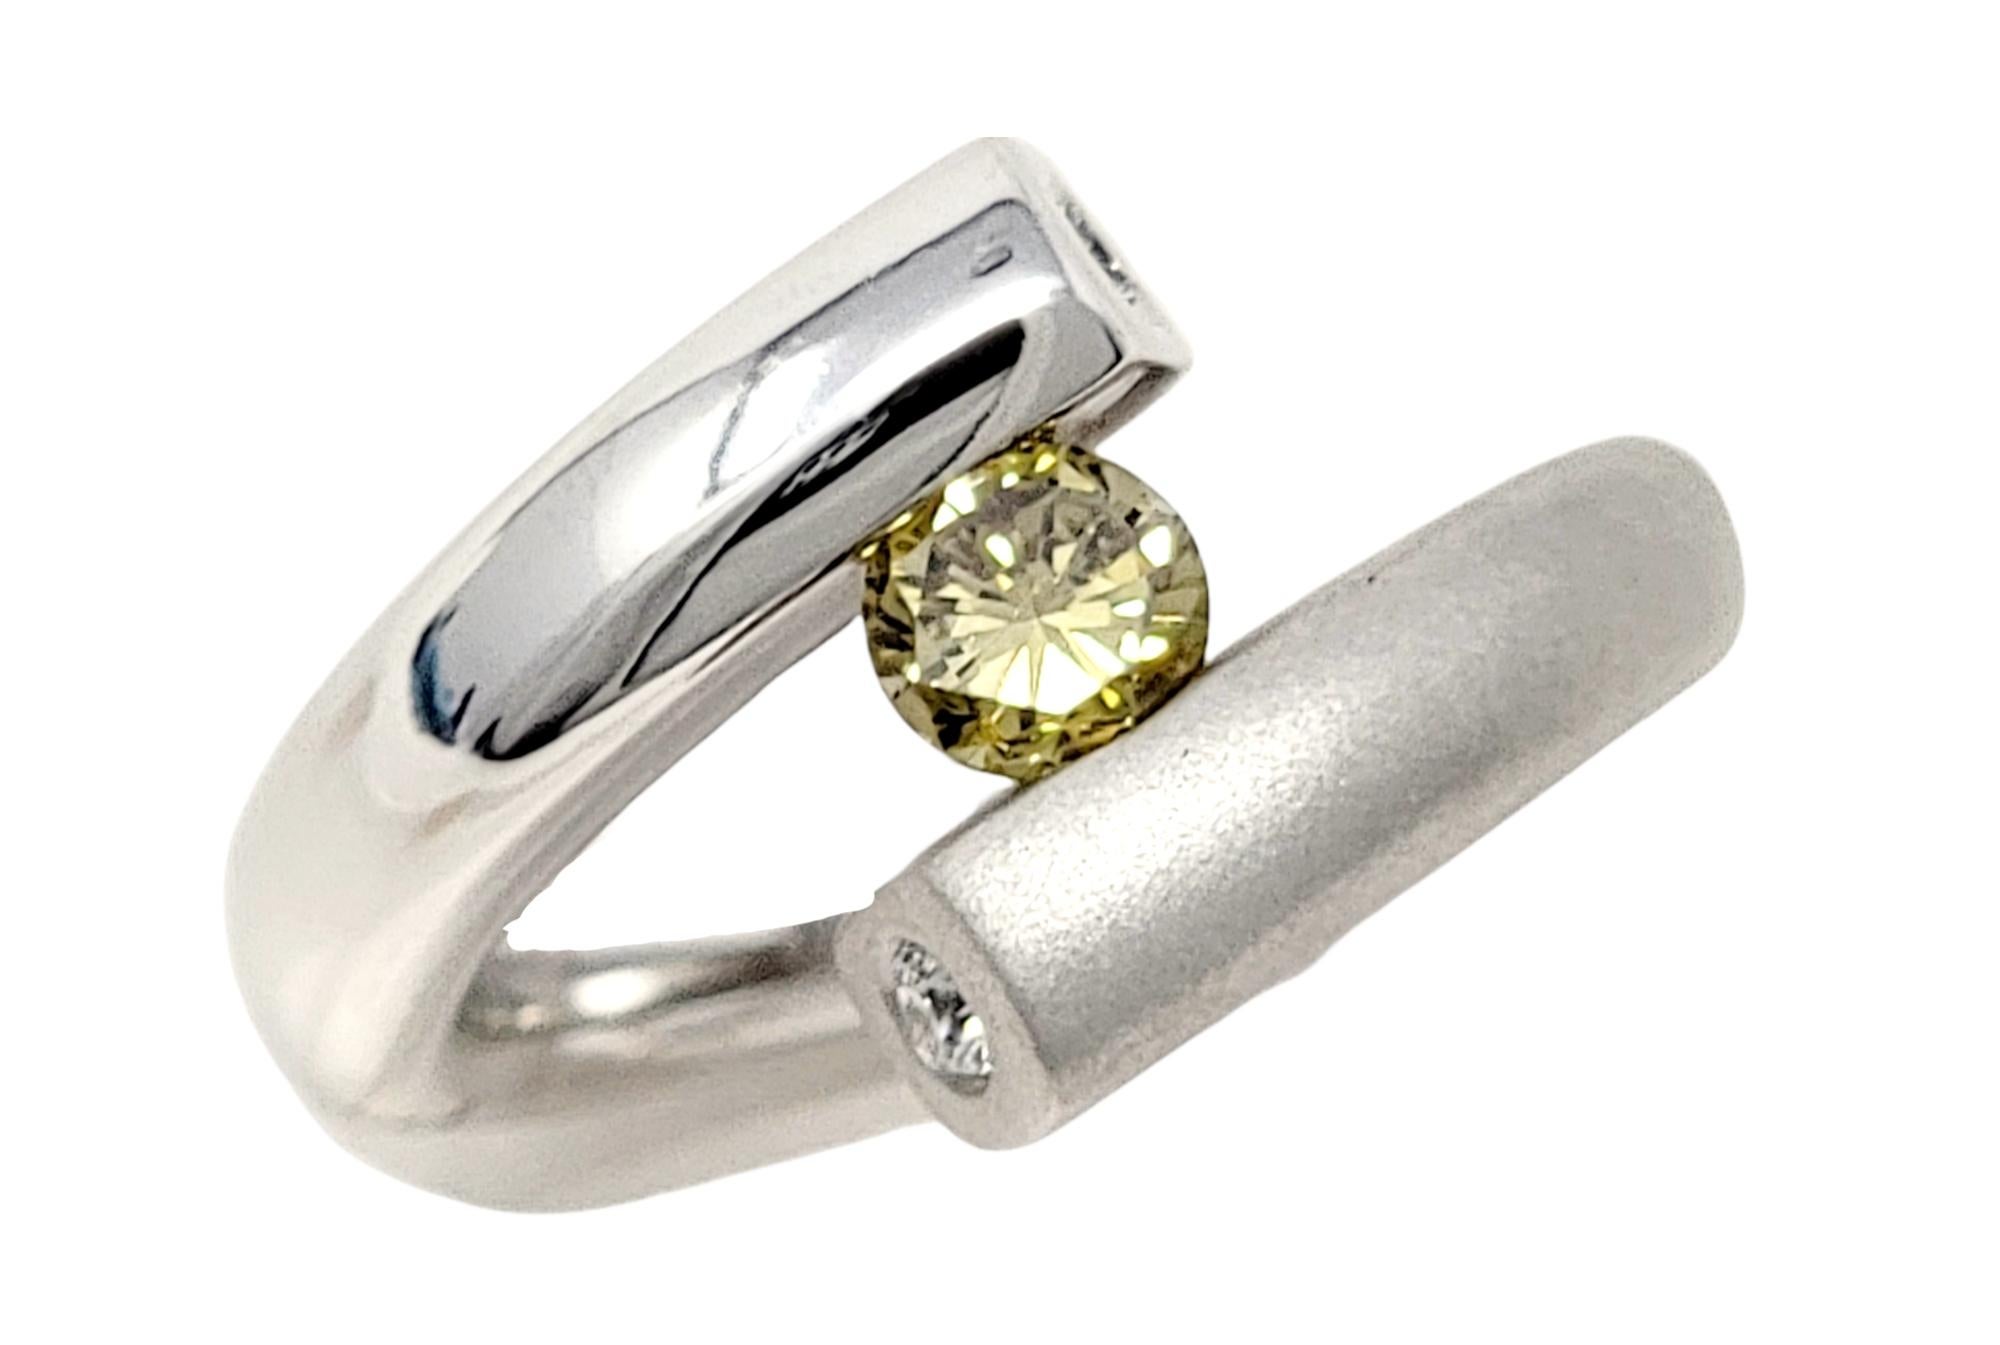 Ringgröße: 7.25

Atemberaubender, hochmoderner Diamantring des Schmuckdesigners Gelin Abaci. Diese zeitgenössische Schönheit ist mit einem einzelnen runden Brillanten von bräunlich-gelber Farbe besetzt. Der Farbton dieses wunderschönen Steins ist